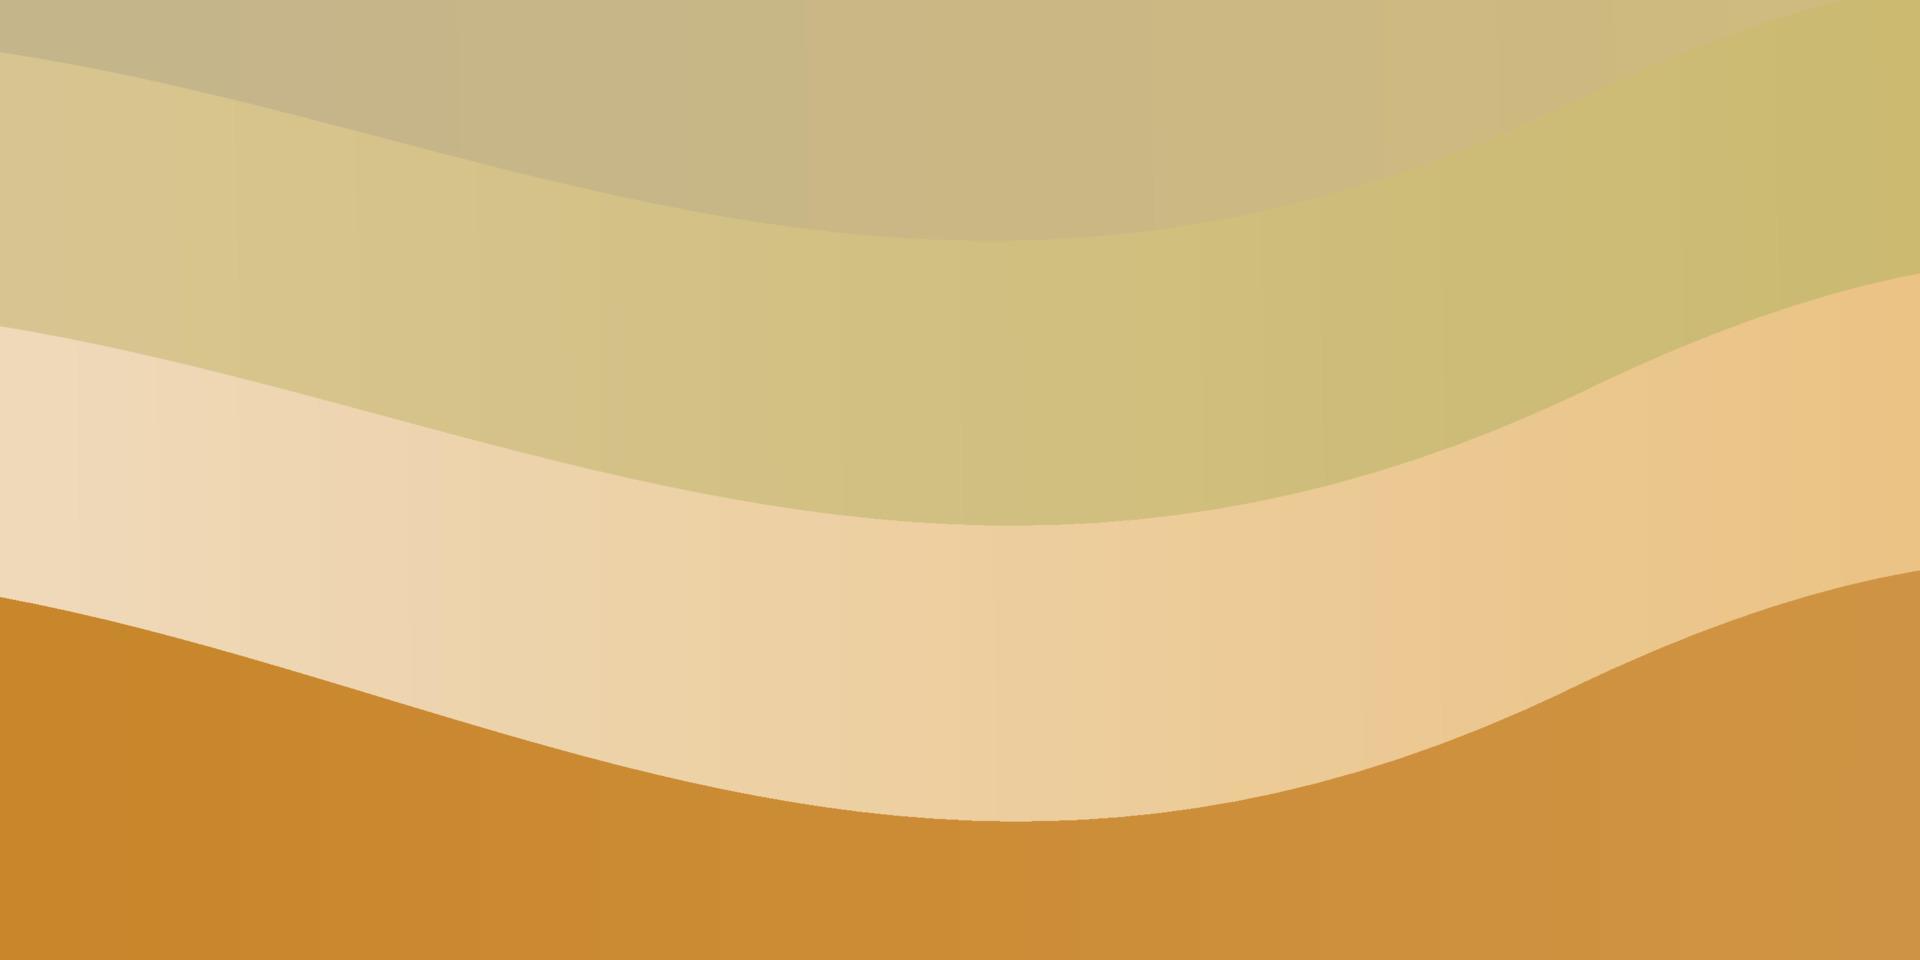 sfondo vettoriale arancione chiaro con linee piegate.